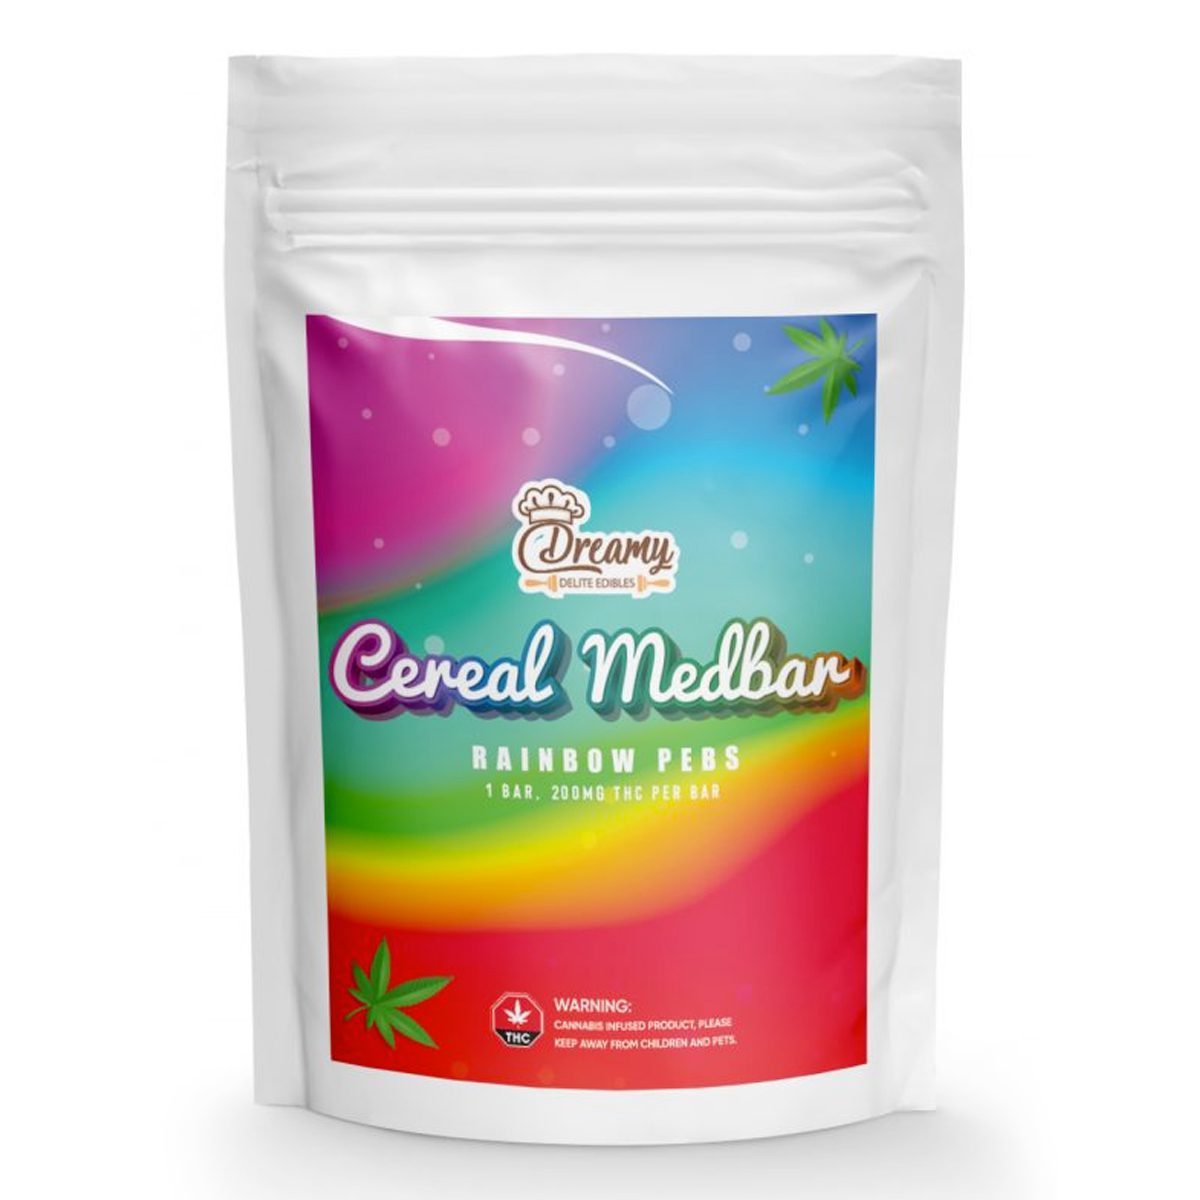 Buy Rainbow Pebs Cereal Medbar 200mg